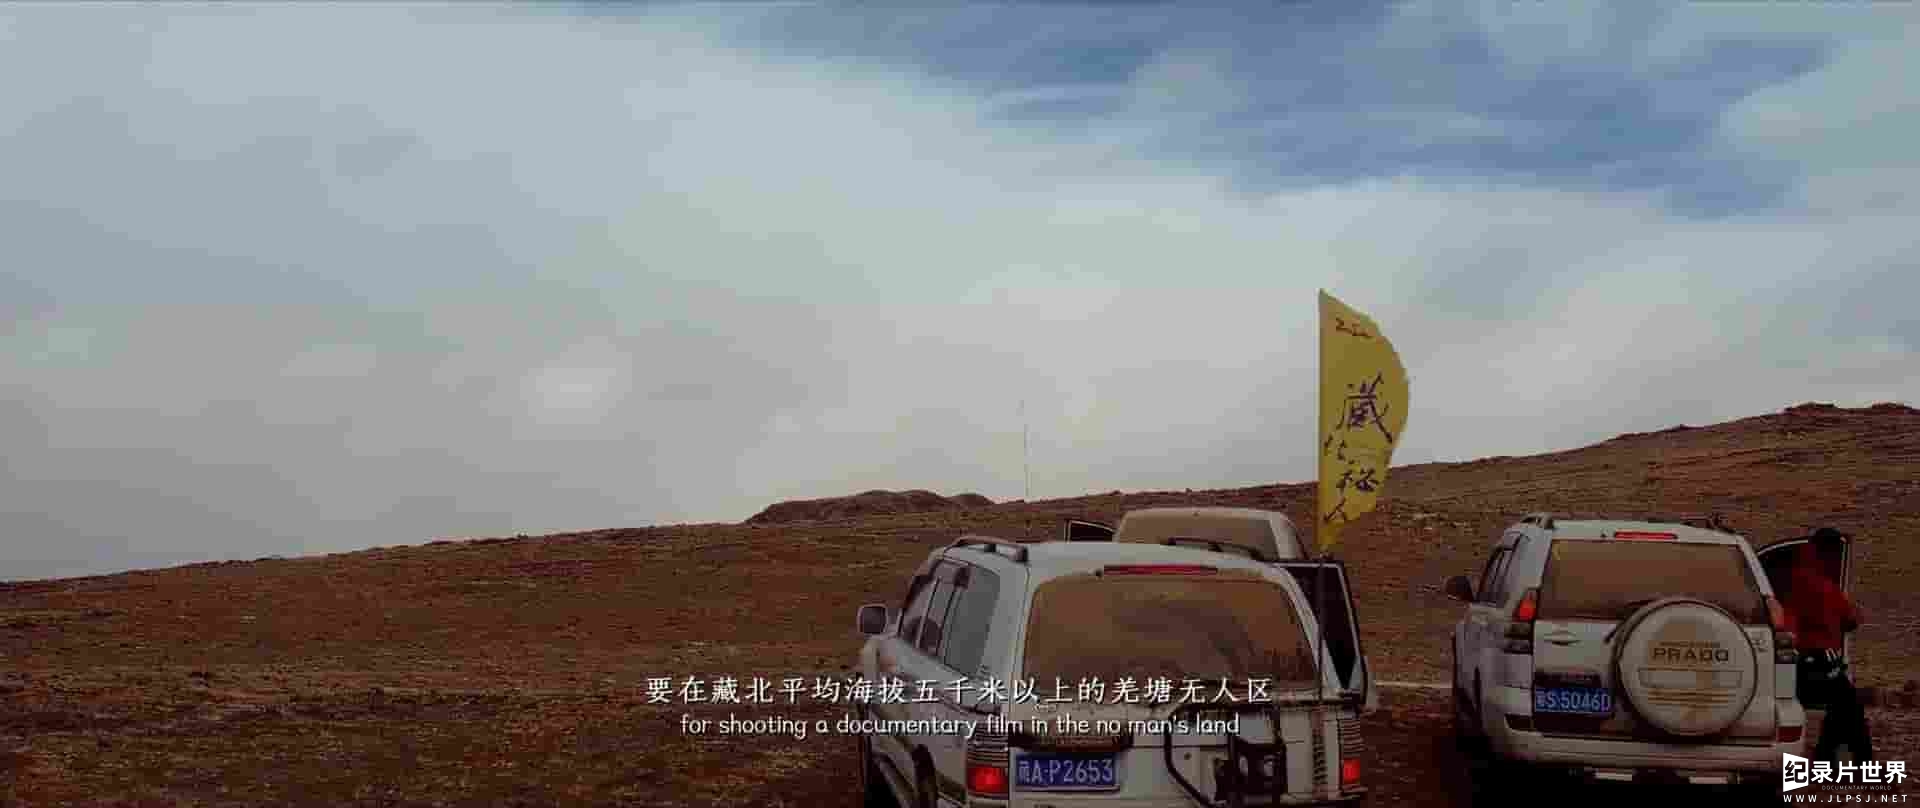 国产纪录片《藏北秘岭-重返无人区 2018》全1集 